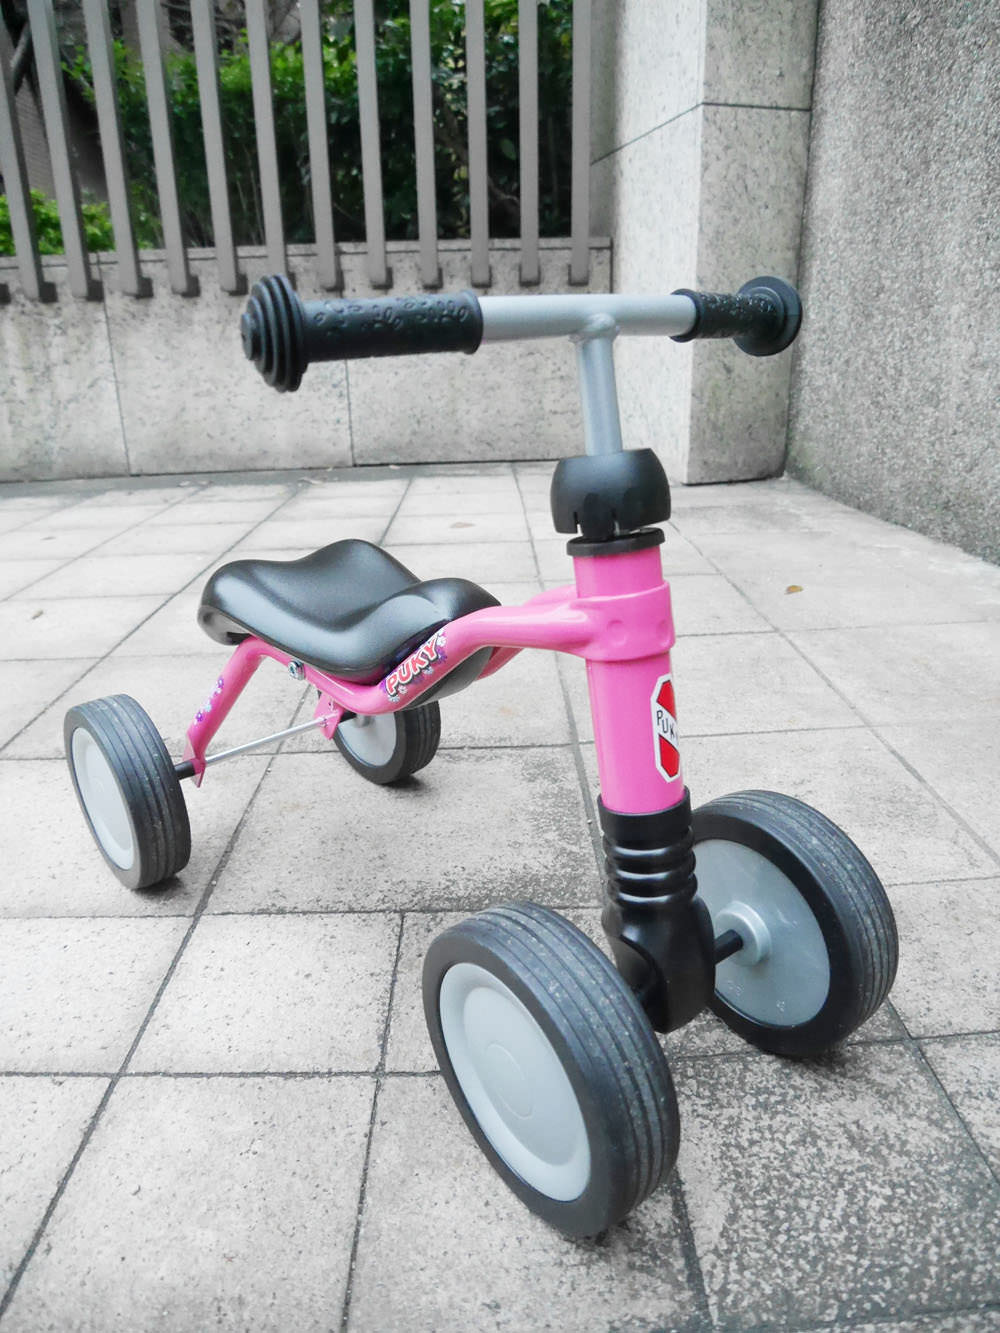 [育兒好物] 德國原裝進口-PUKY滑步車,專為小小孩設計,安全又輕鬆上手的放電神器(網路獨家85折團購)